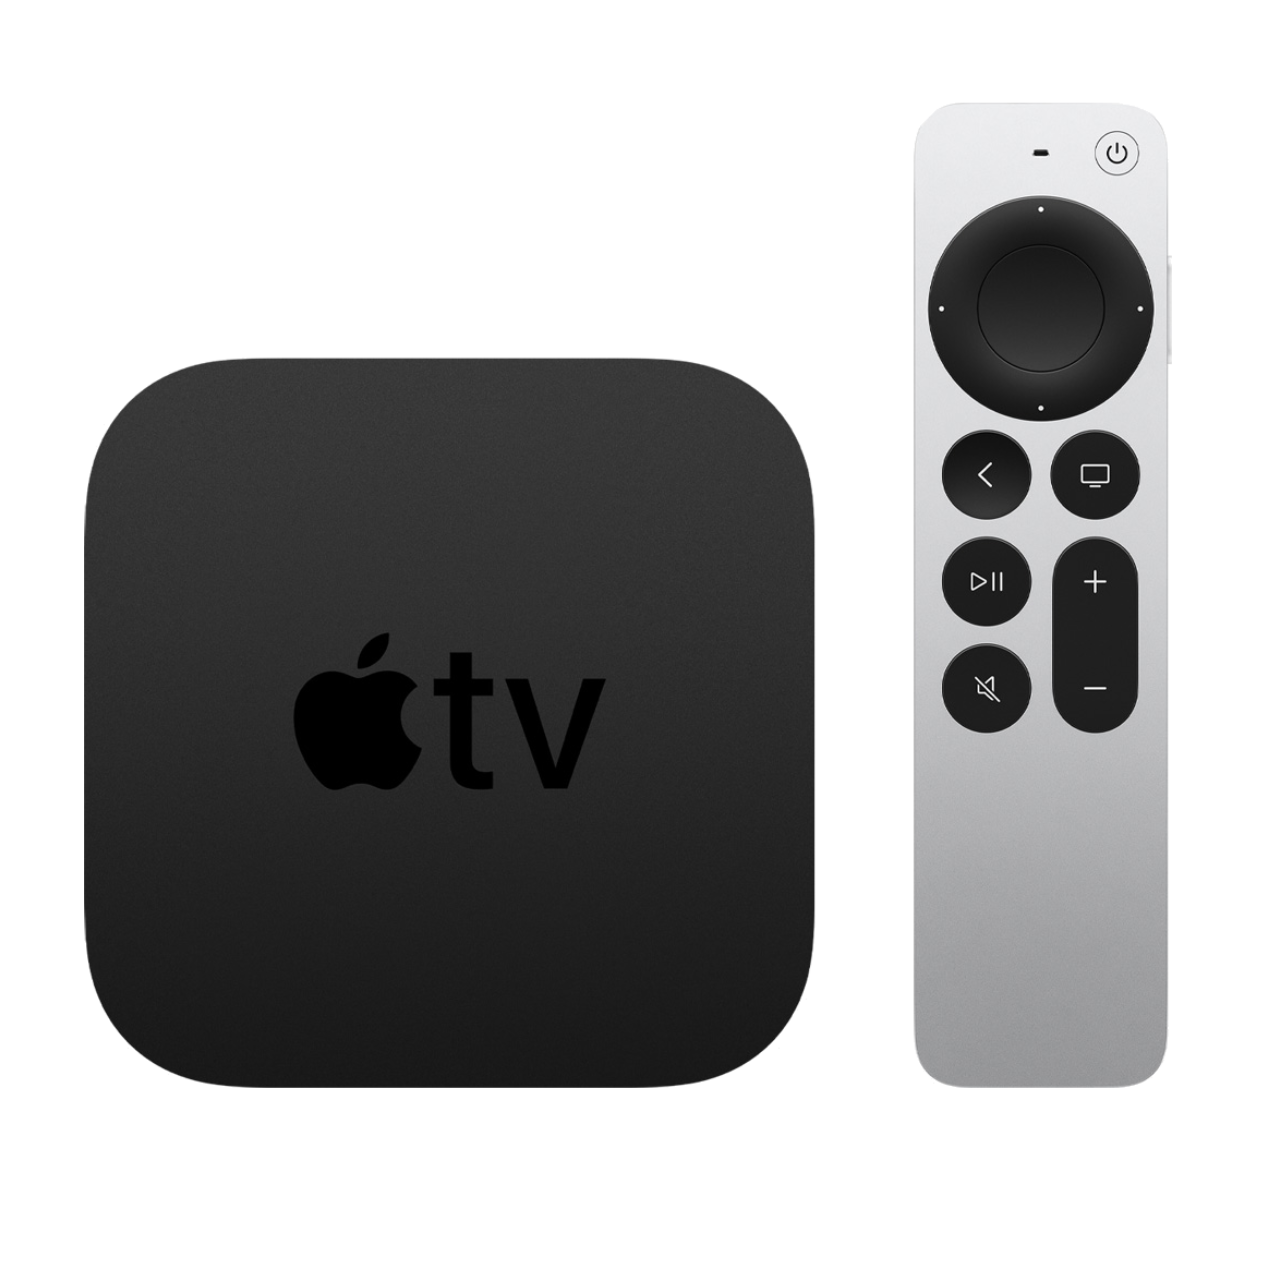 Pas de puce U1 dans la nouvelle télécommande de l’Apple TV 4K et rien non plus pour le nouvel iPad Pro